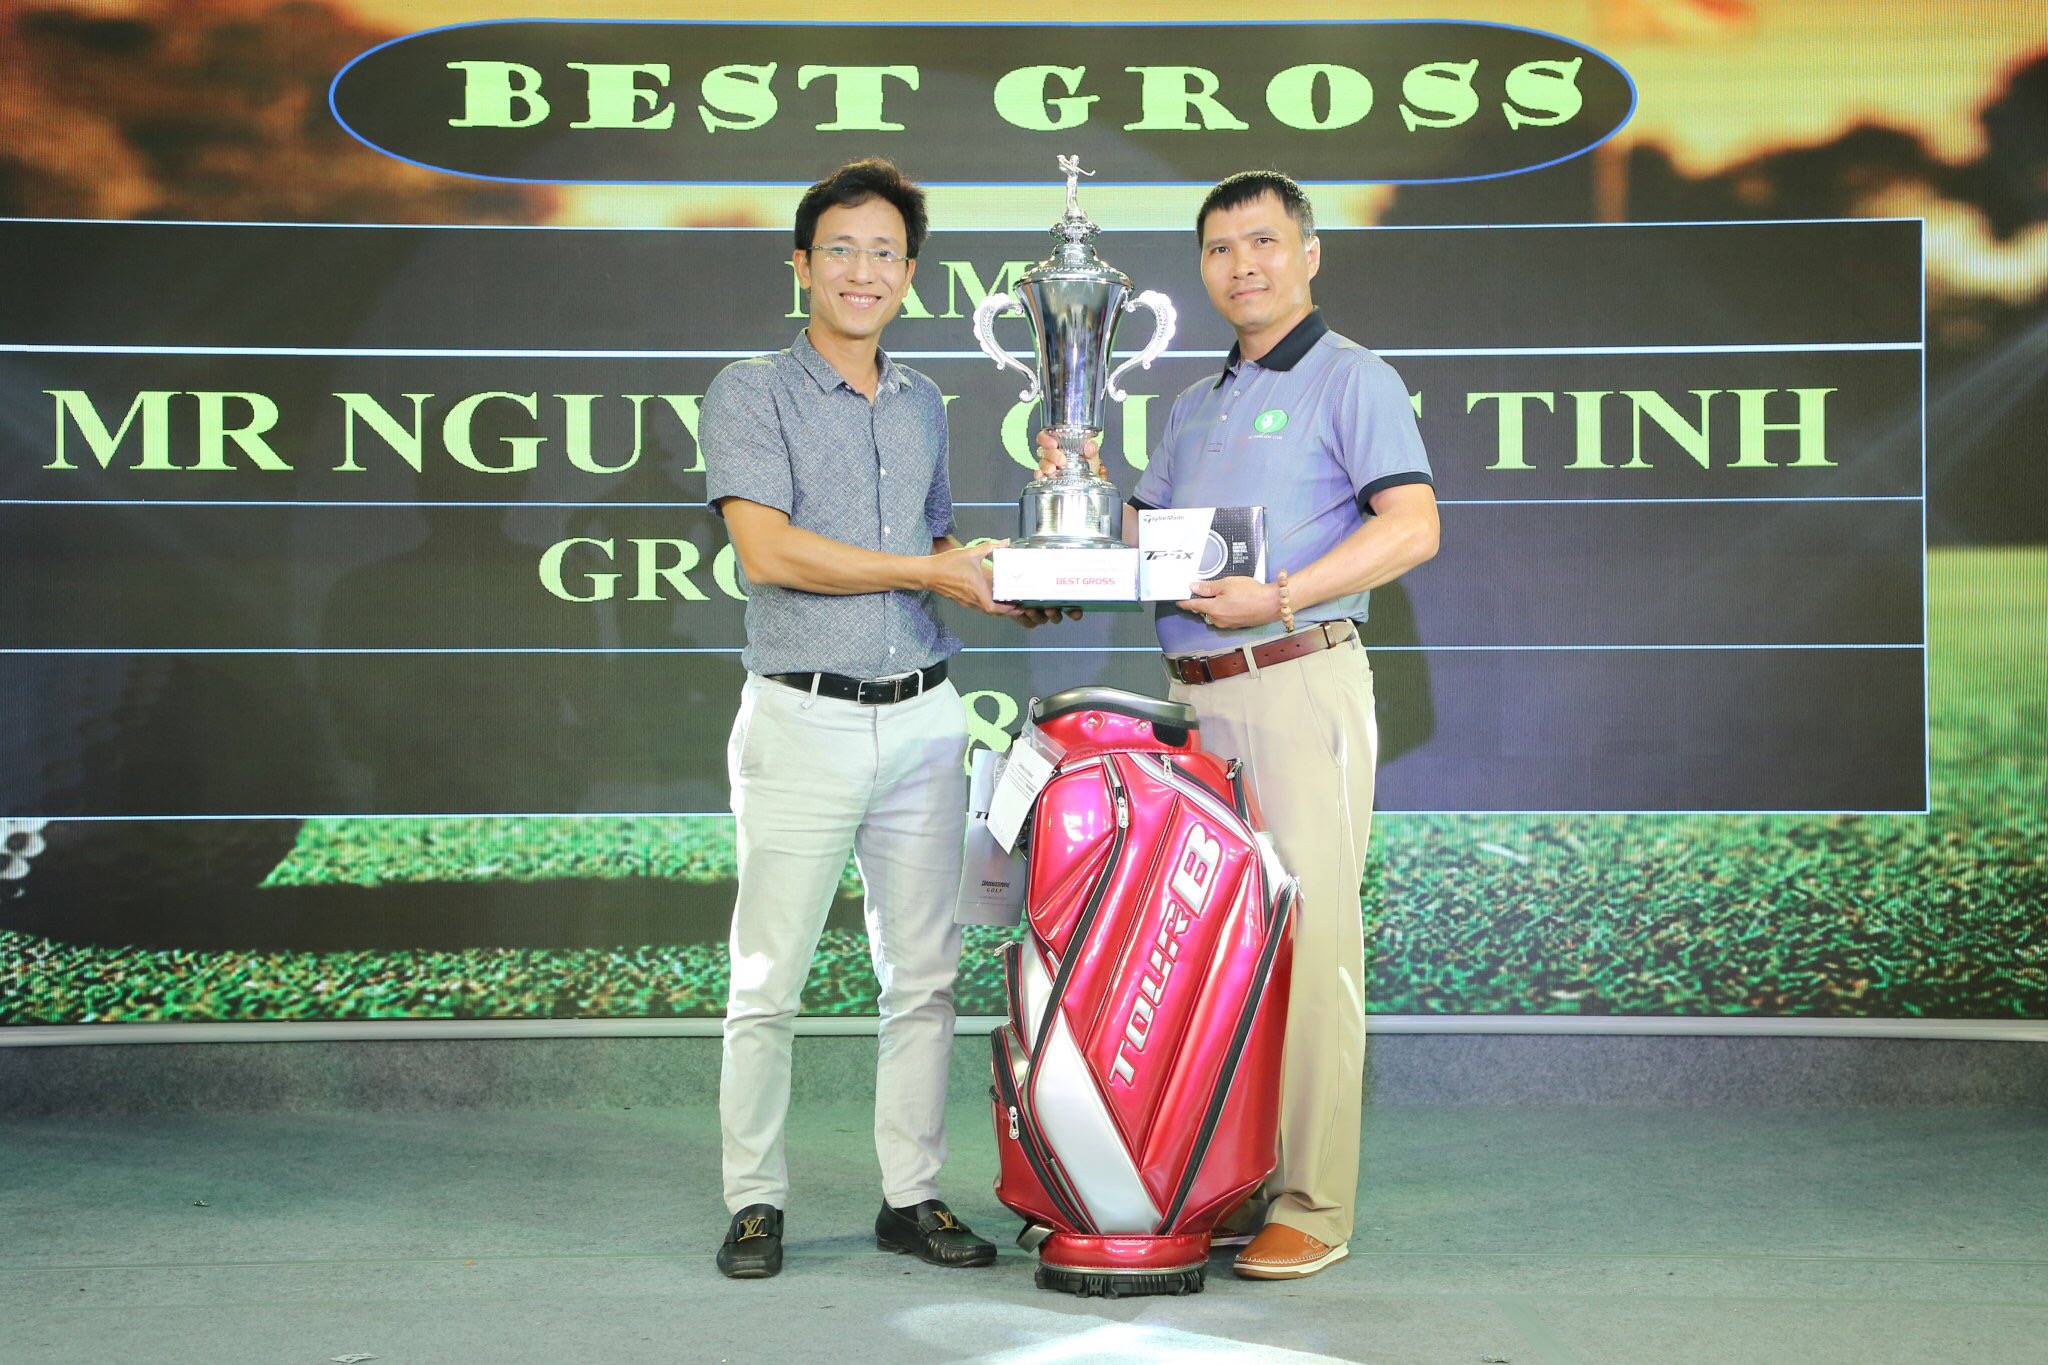 Nguyễn Quốc Tình giành Best Gross giải CLB Golf Bách Khoa TP. HCM Lần thứ 6 với 78 gậy